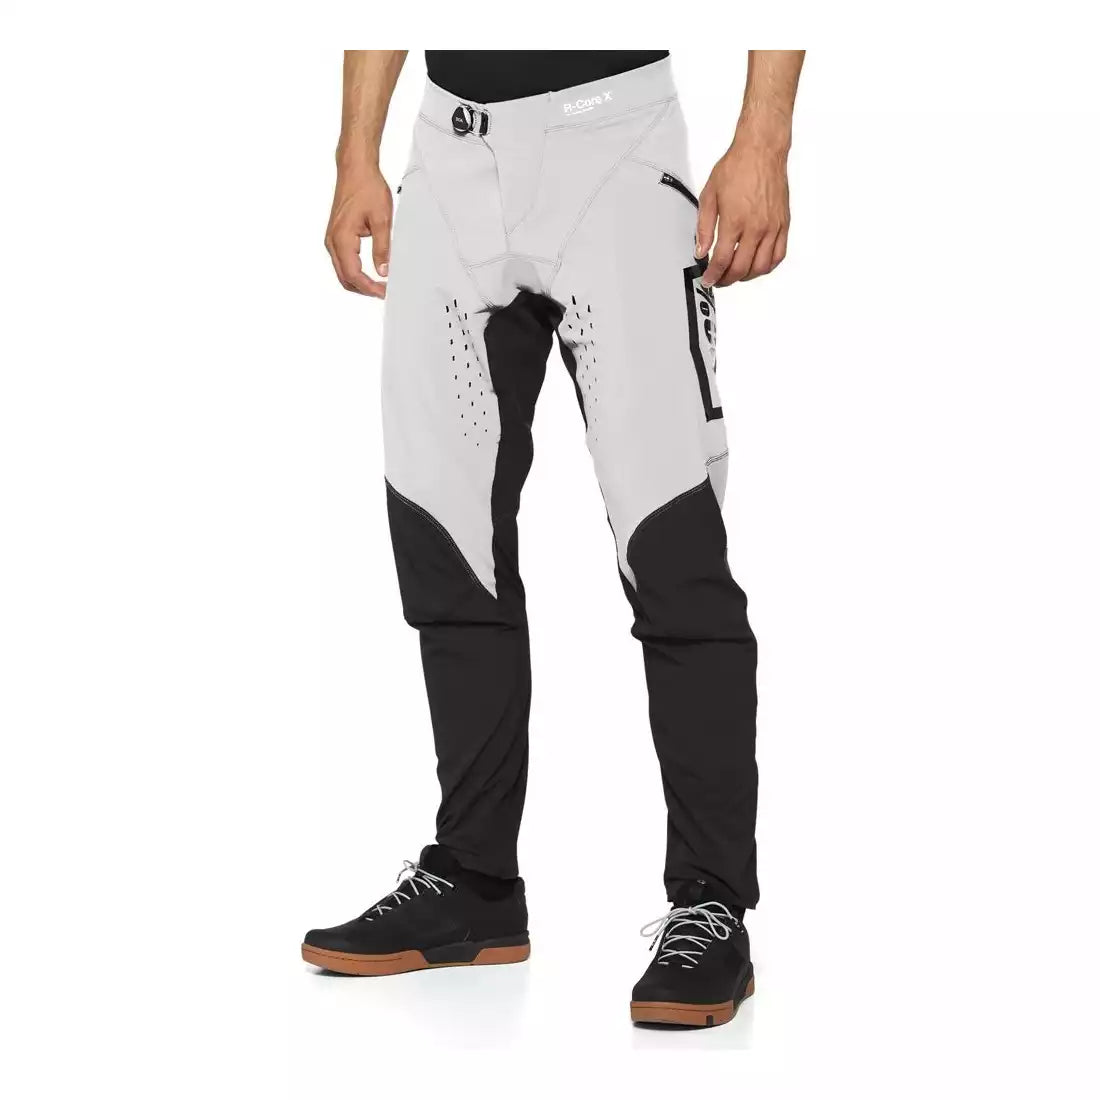 R-Core-x Pants Grey 100%